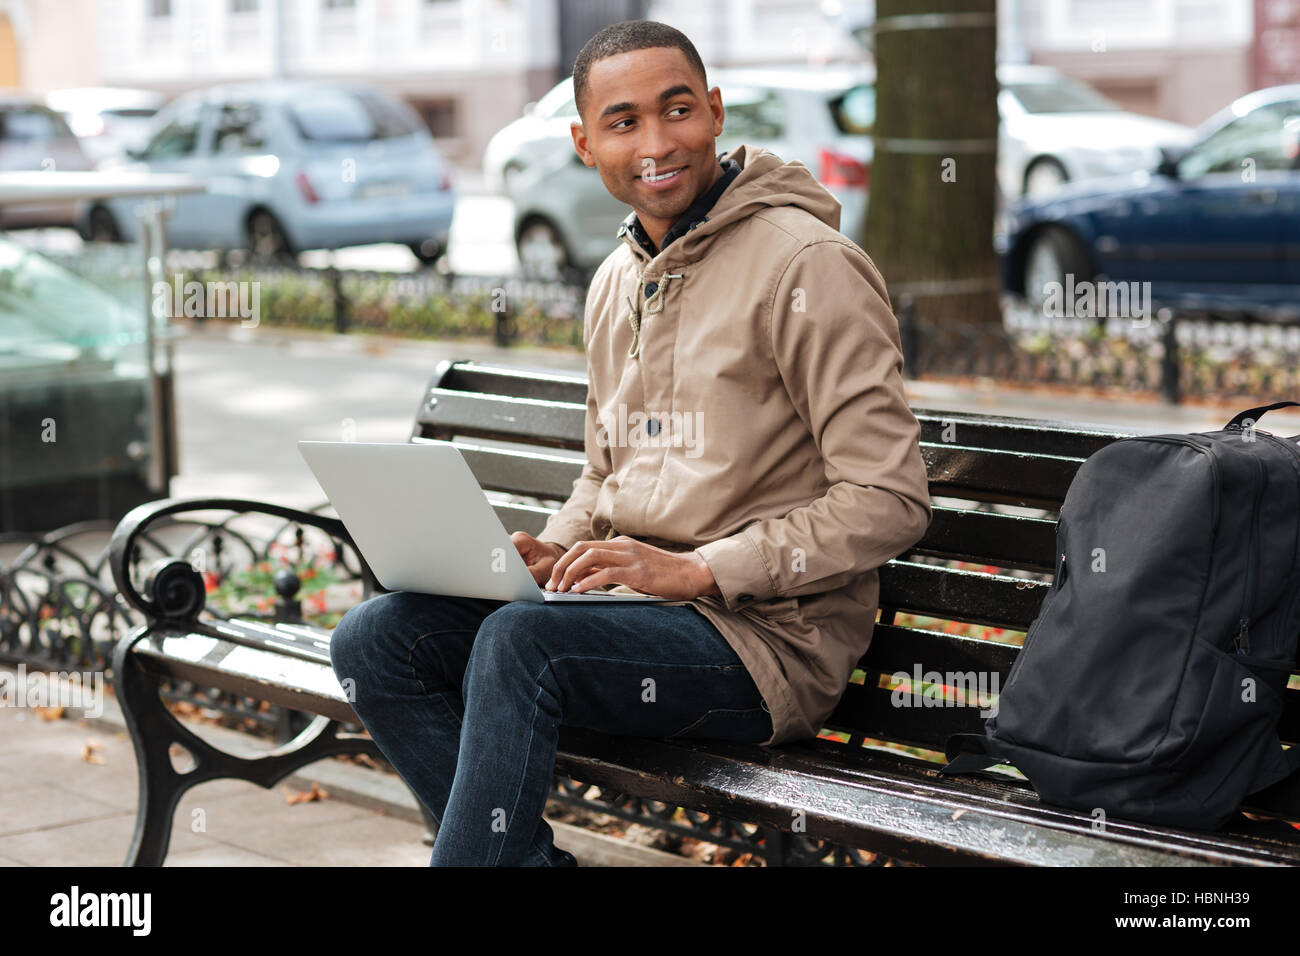 Photo de l'homme heureux avec ordinateur portable assis sur un banc de bois près de sac à dos et la saisie. Regarder de côté. Banque D'Images